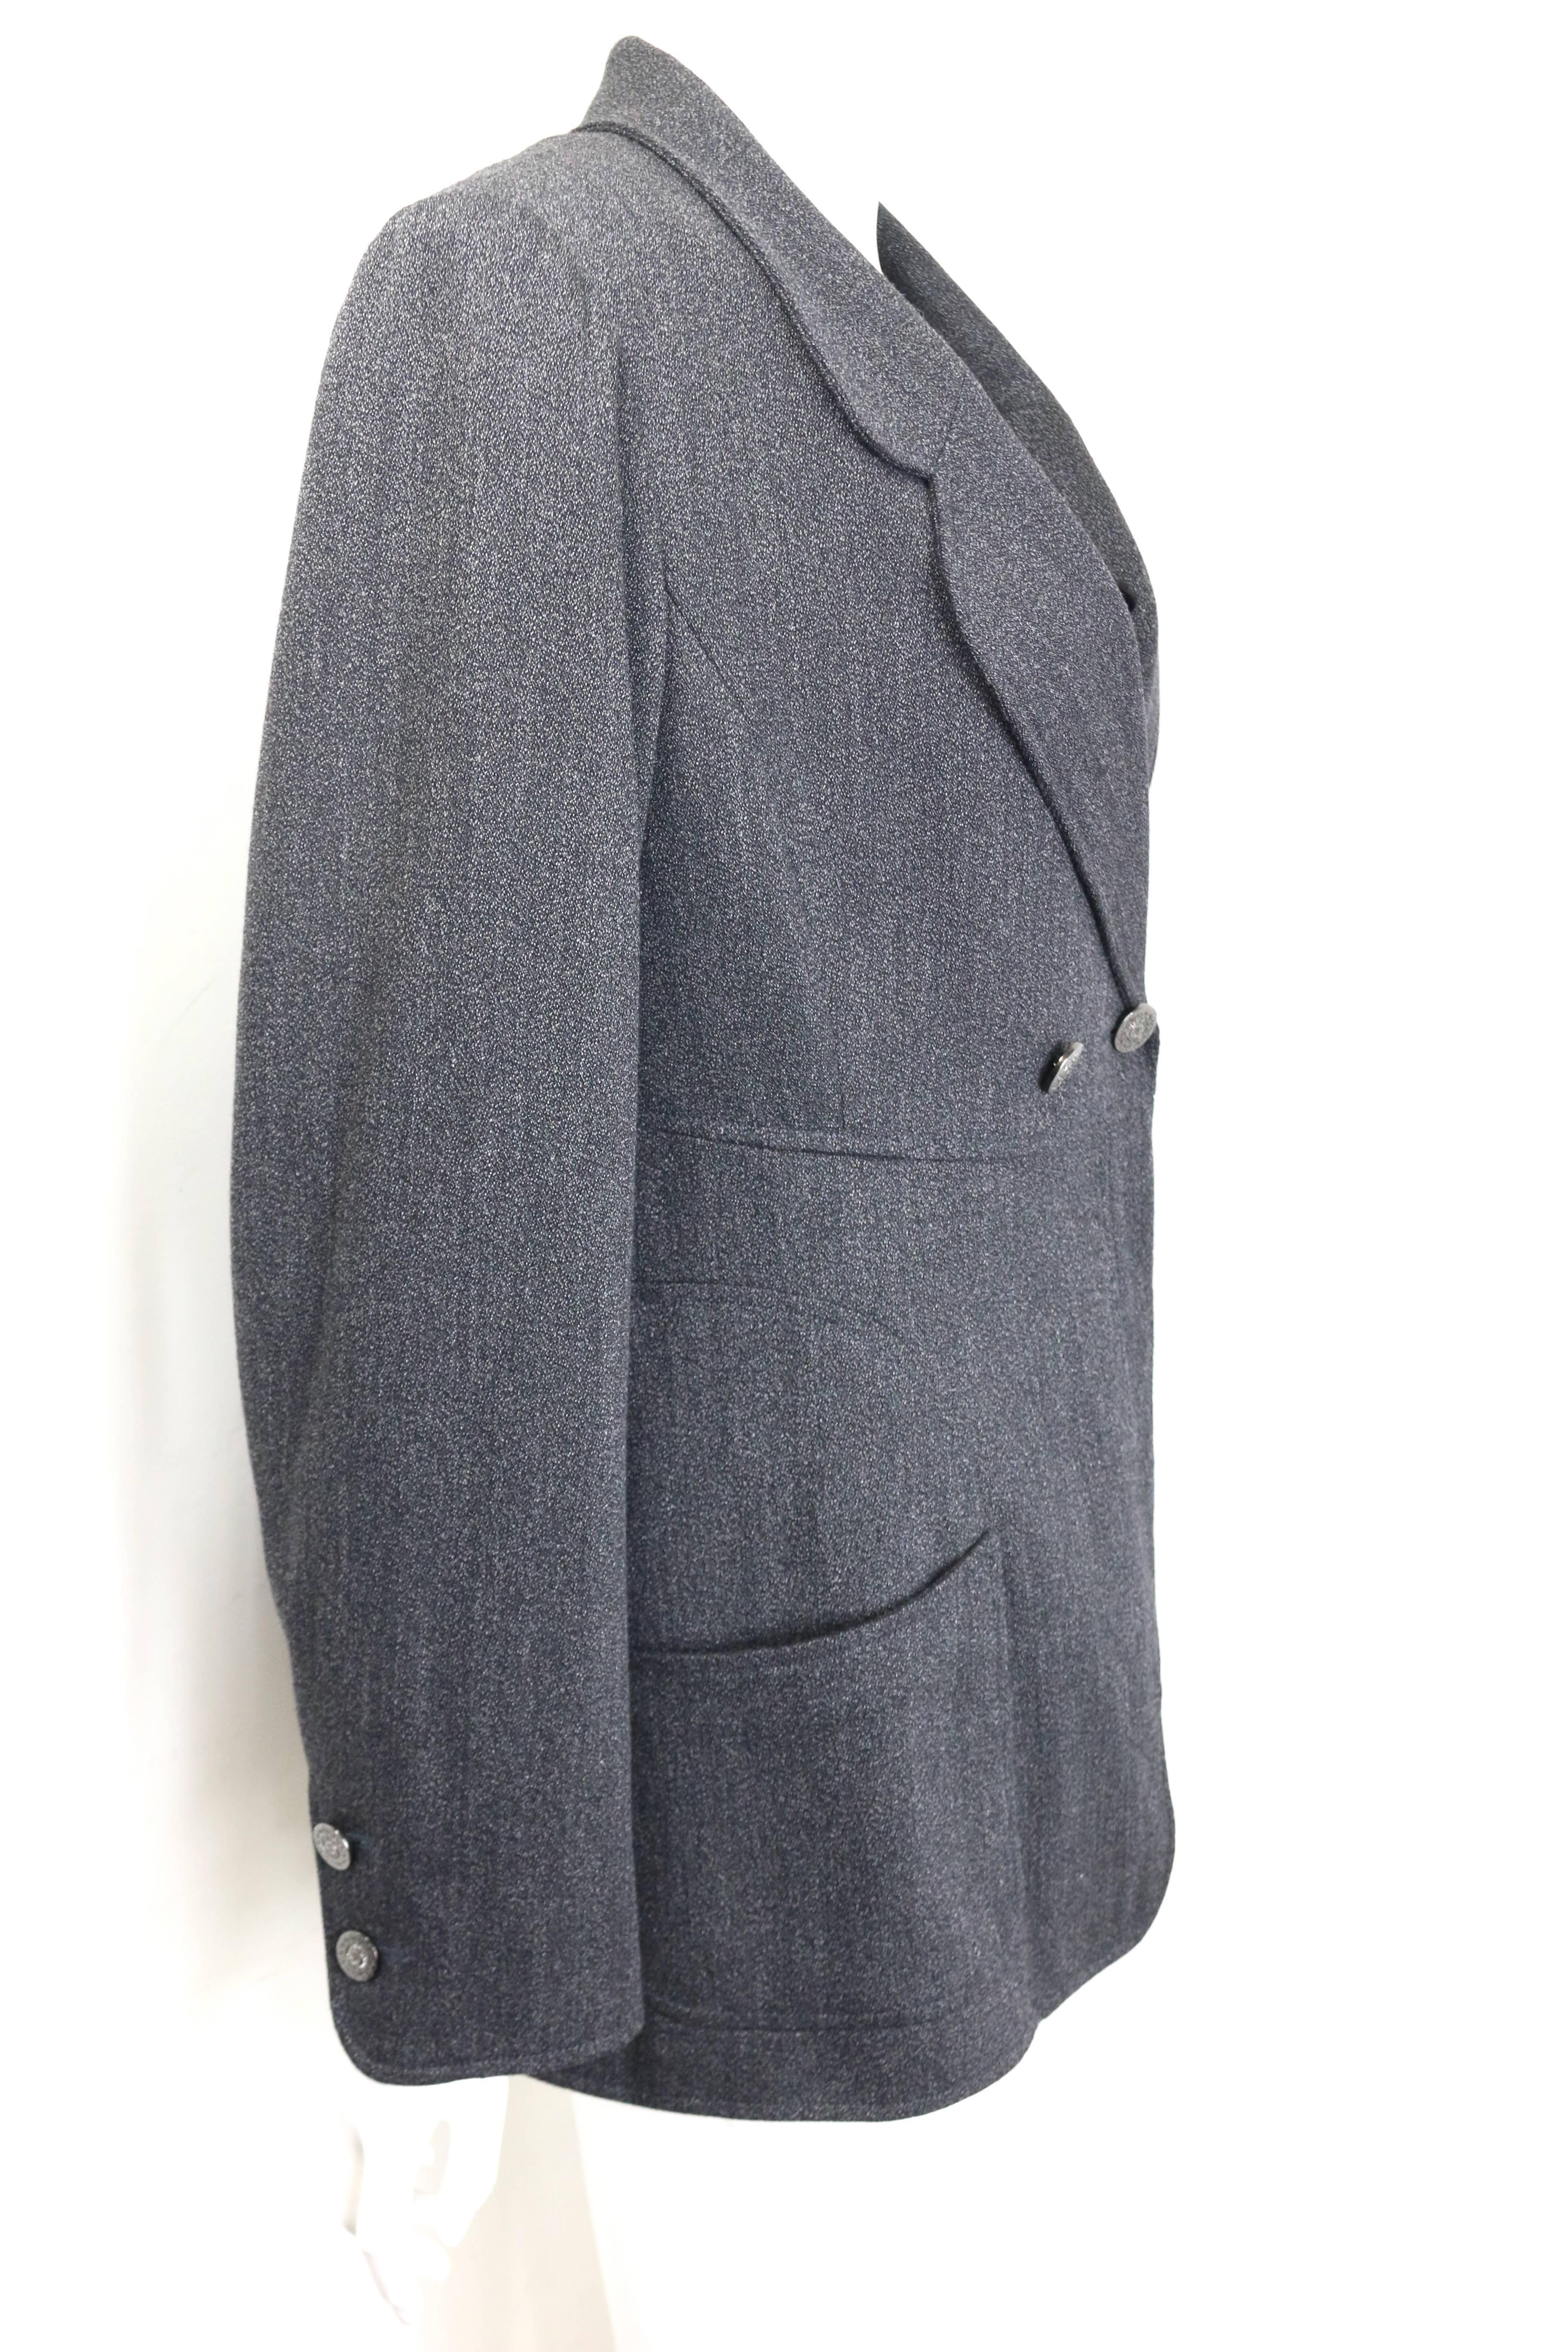 - Vintage Chanel, veste à double boutonnage en laine grise, collection A/H 1997. 

- Col rond. 

- Deux poches ouvertes sur le devant. 
 
- Bouton 